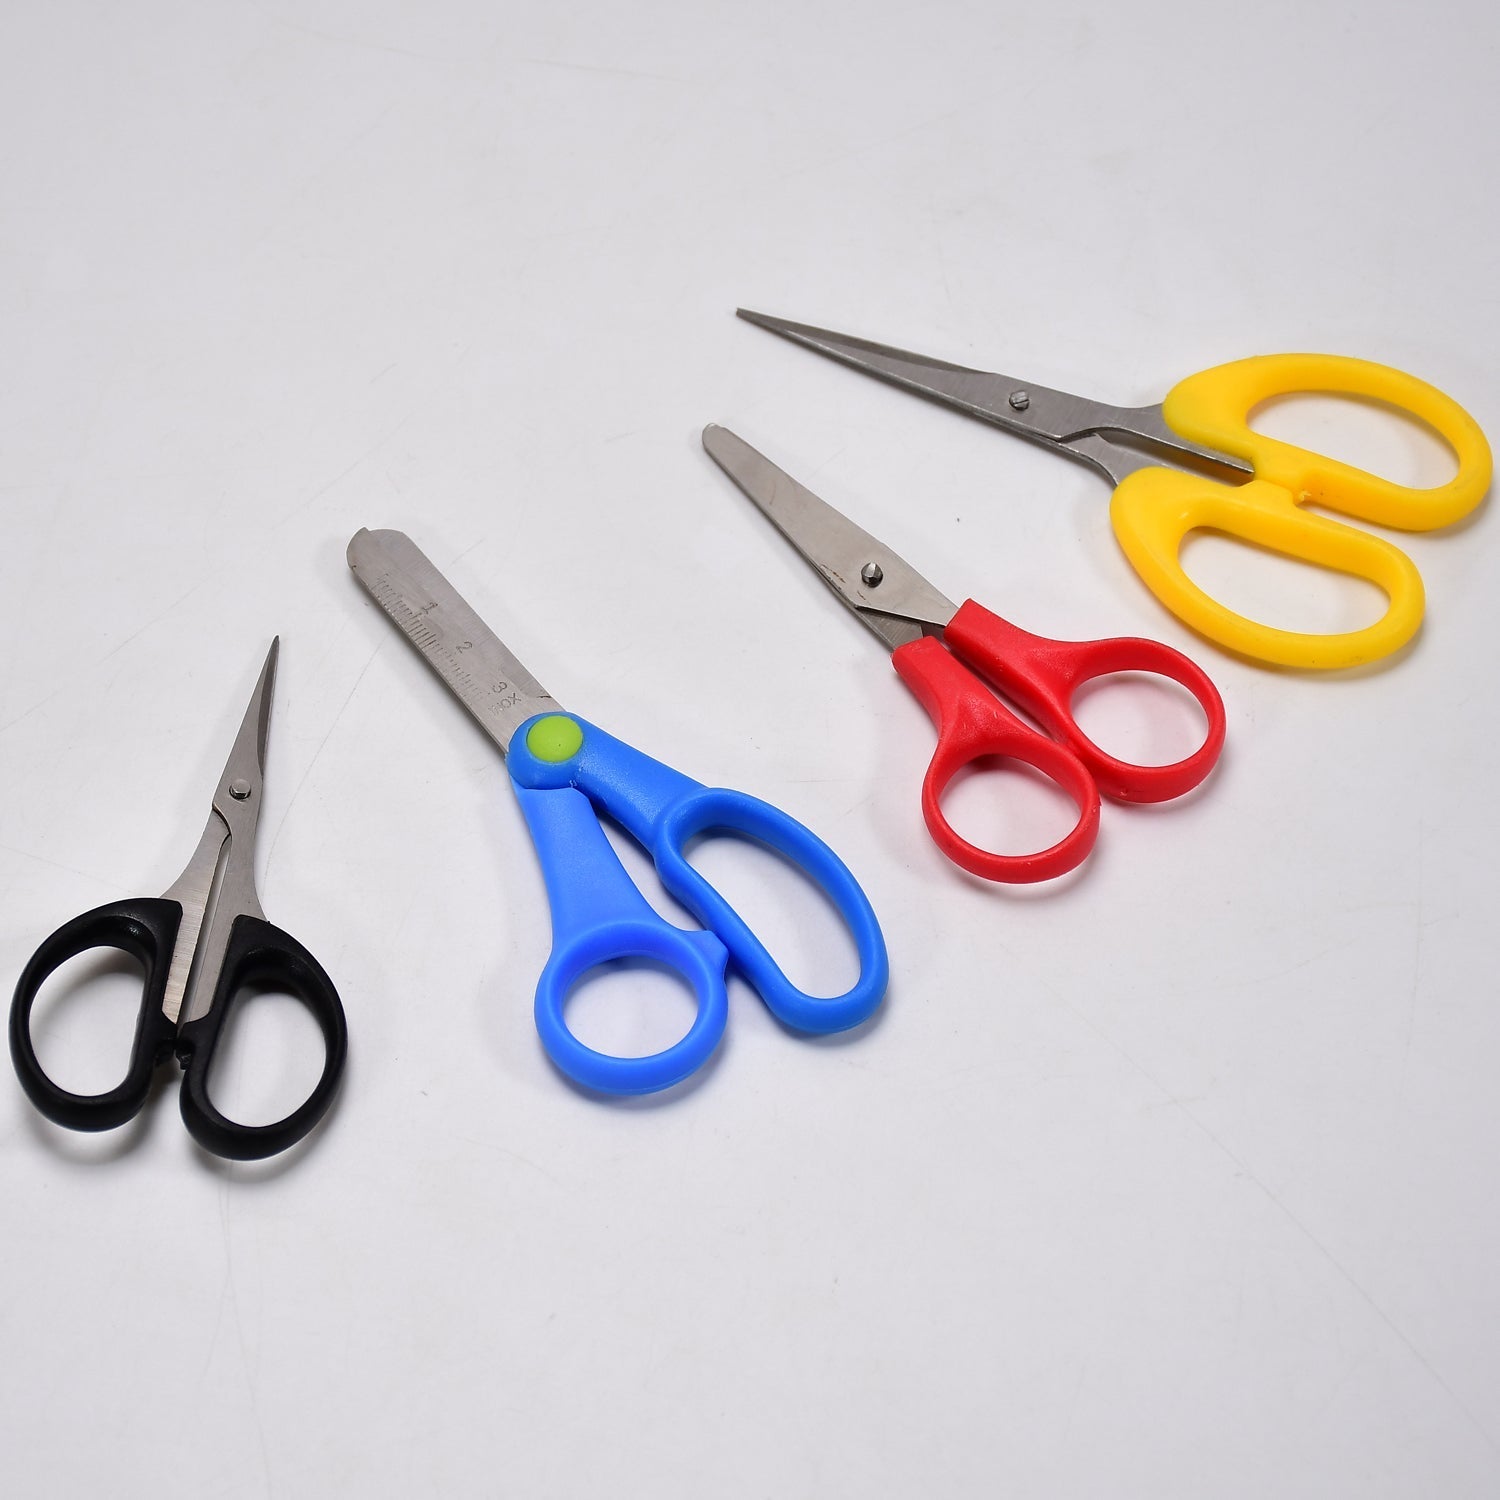 9128 Multipurpose Large Stainless Steel Scissor For Home Scissors/Office Scissors/School Work Scissors /Cutting / Croping Scissors /Tailoring Scissors ( Mix 1 Kg )